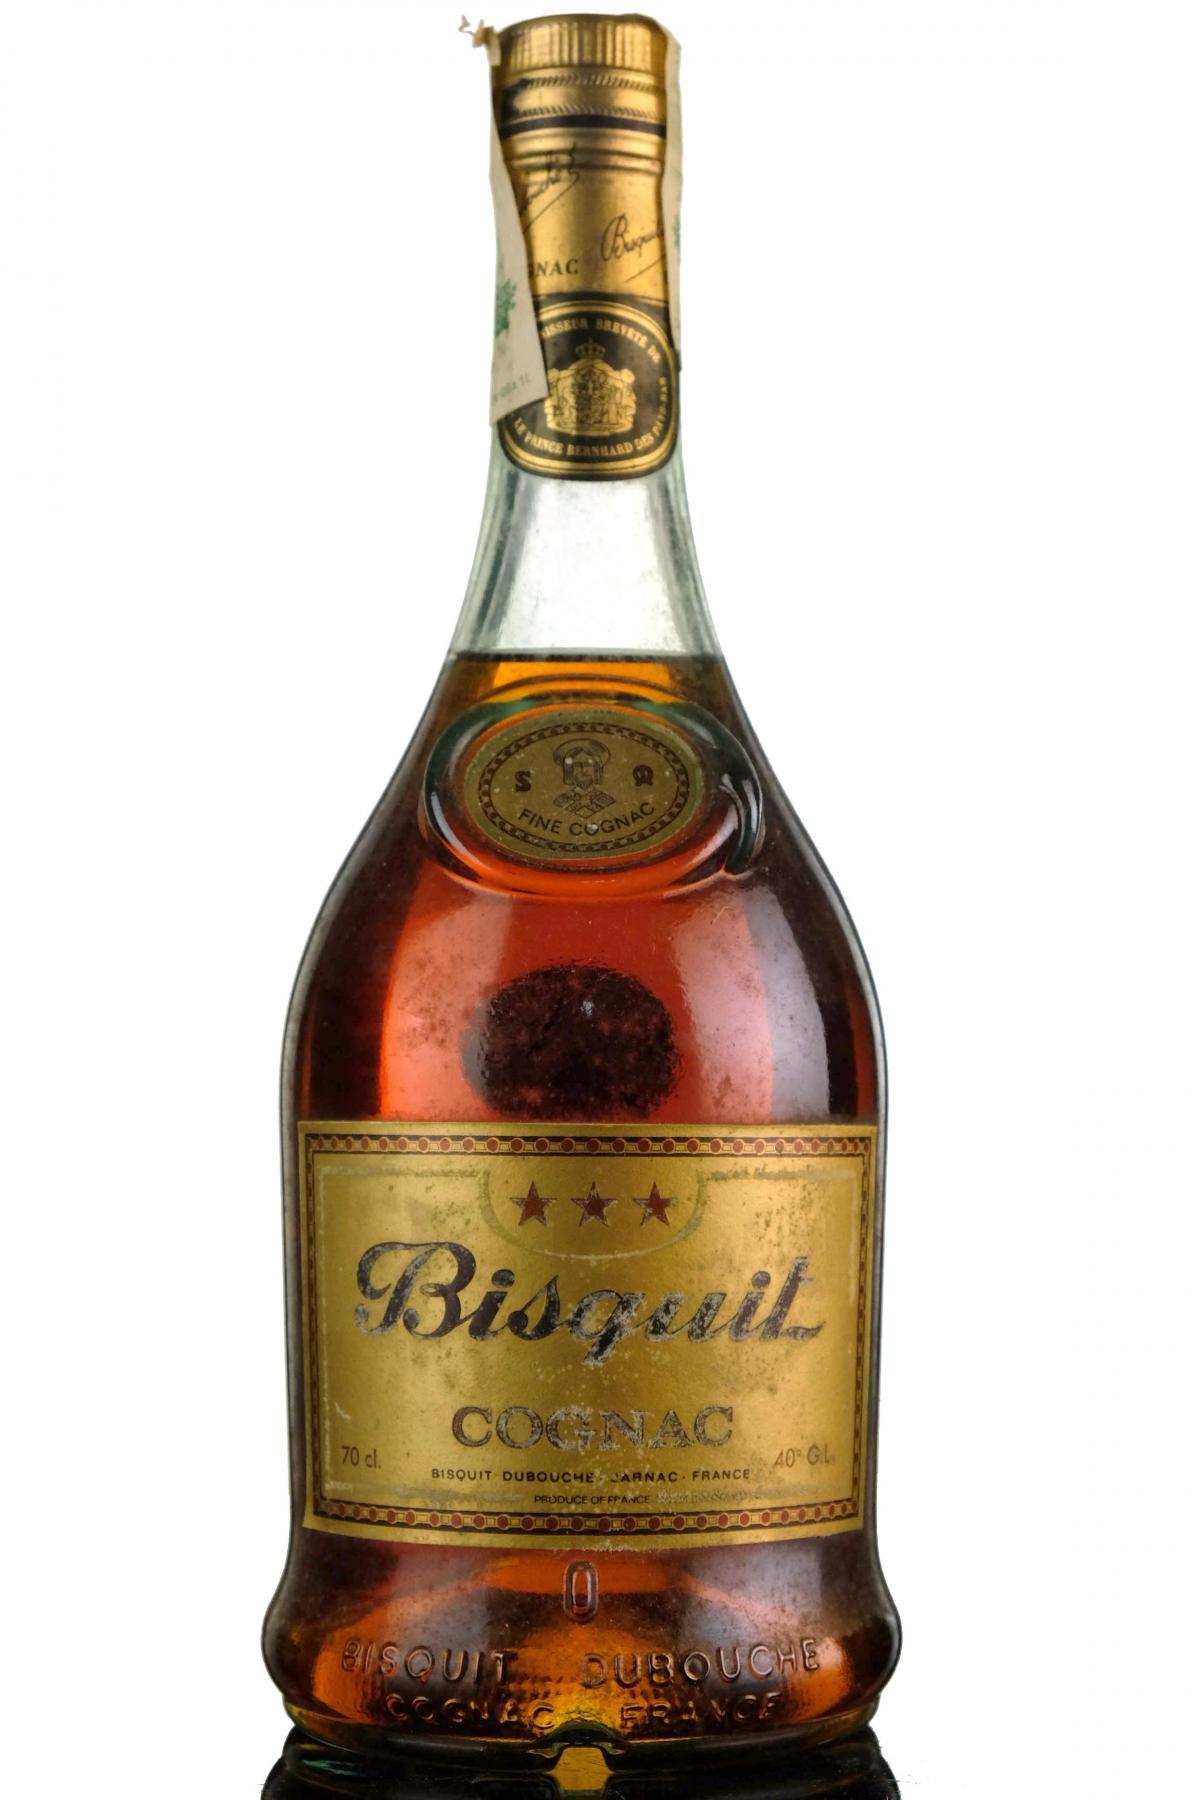 Bisquit 3 Star Cognac